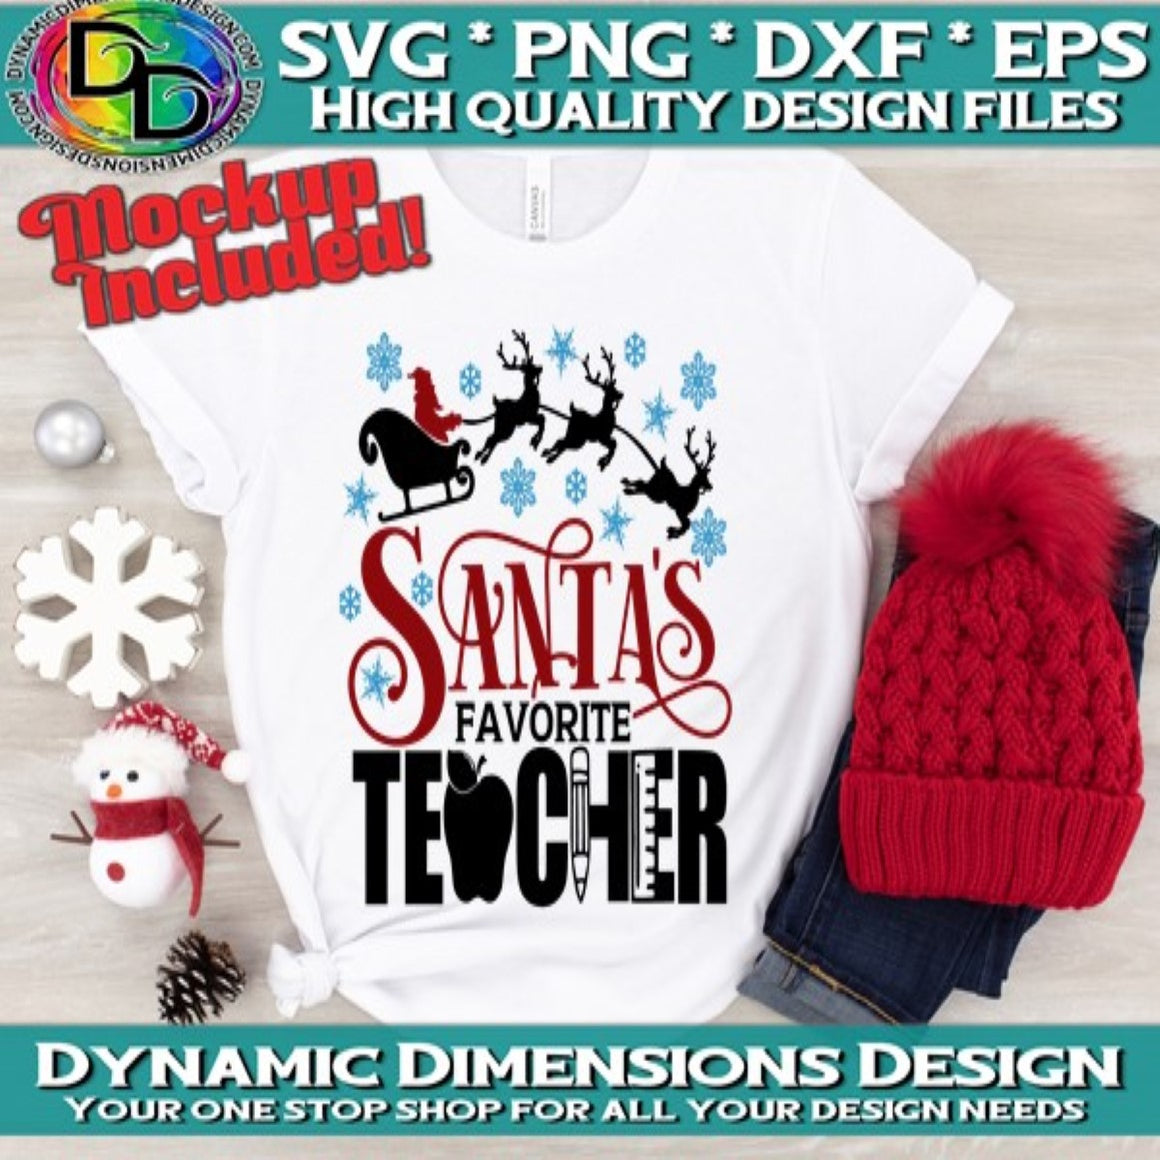 Santa's favorite Teacher svg, png, instant download, dxf, eps, pdf, jpg, cricut, silhouette, sublimtion, printable